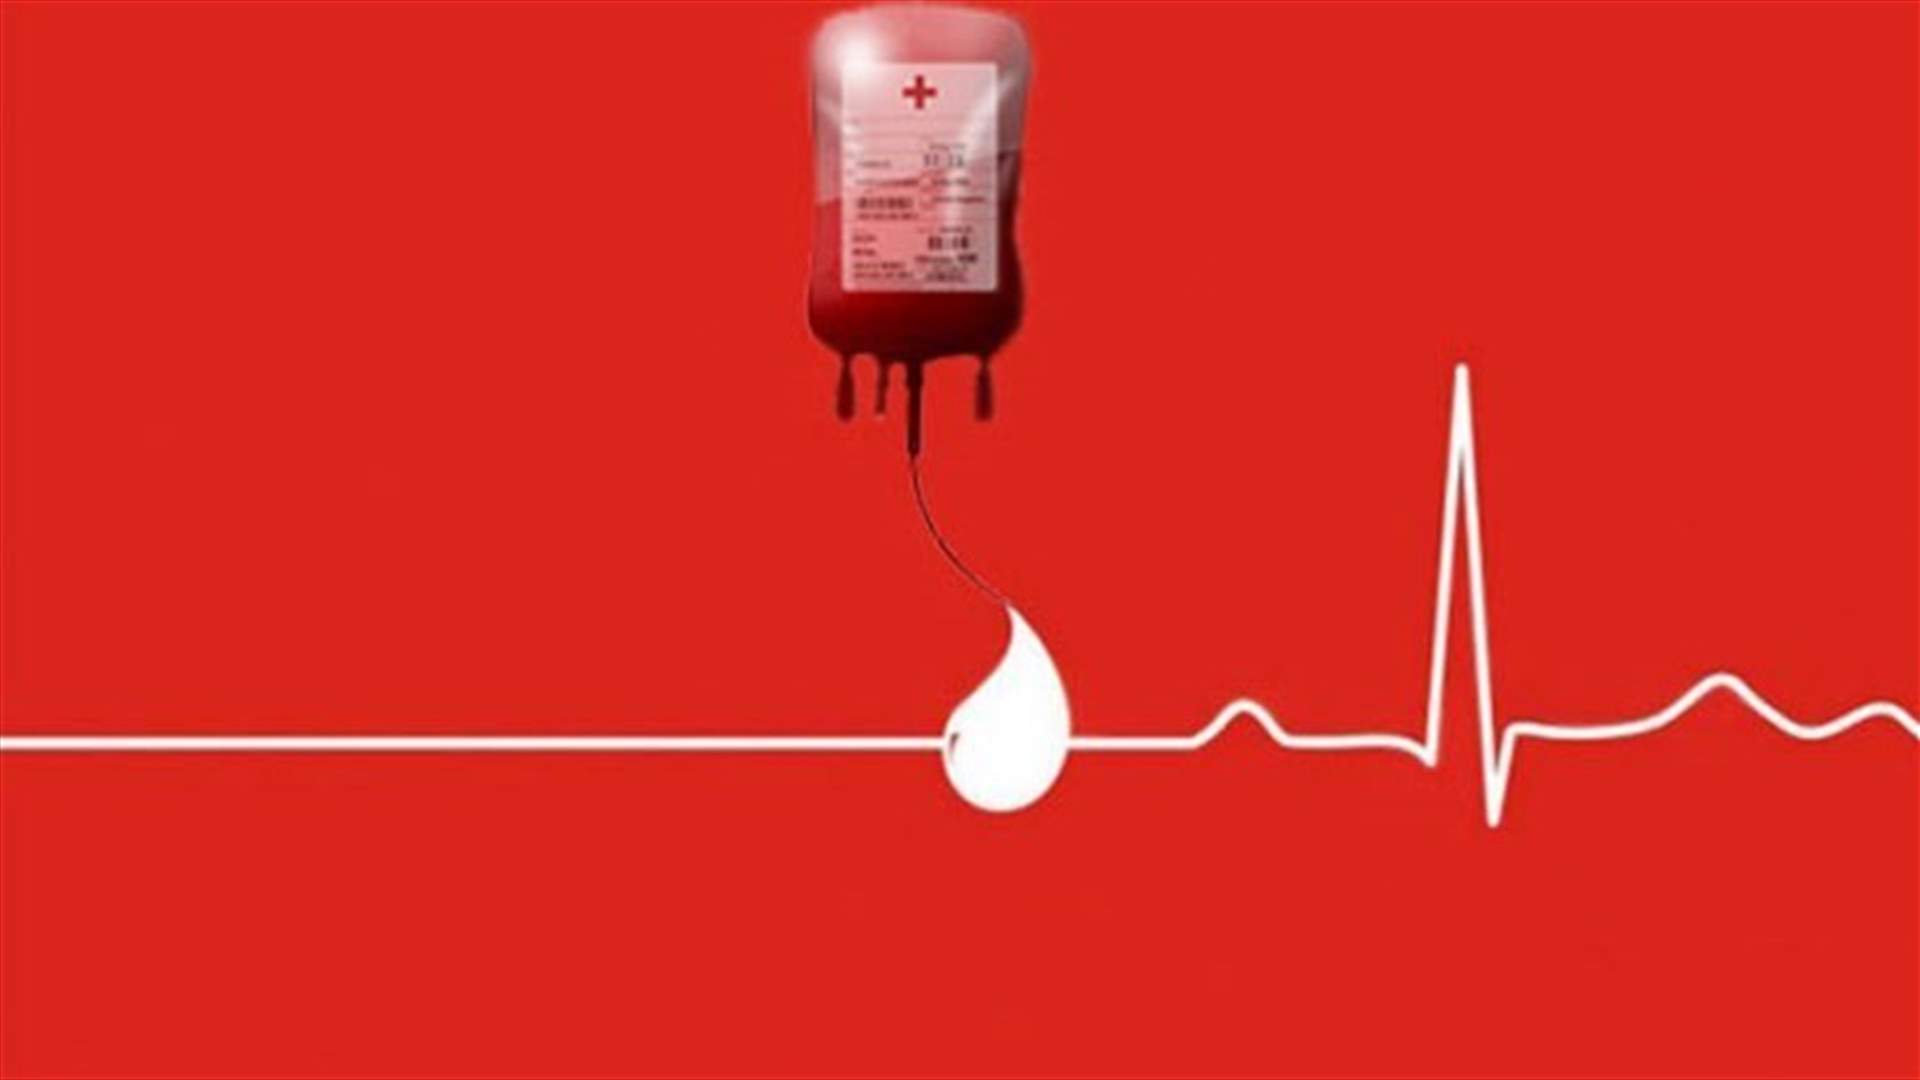 مريض في مستشفى سيدة لبنان - جونية بحاجة ماسة الى دم من فئة -B ... للتبرع الاتصال على 71910914